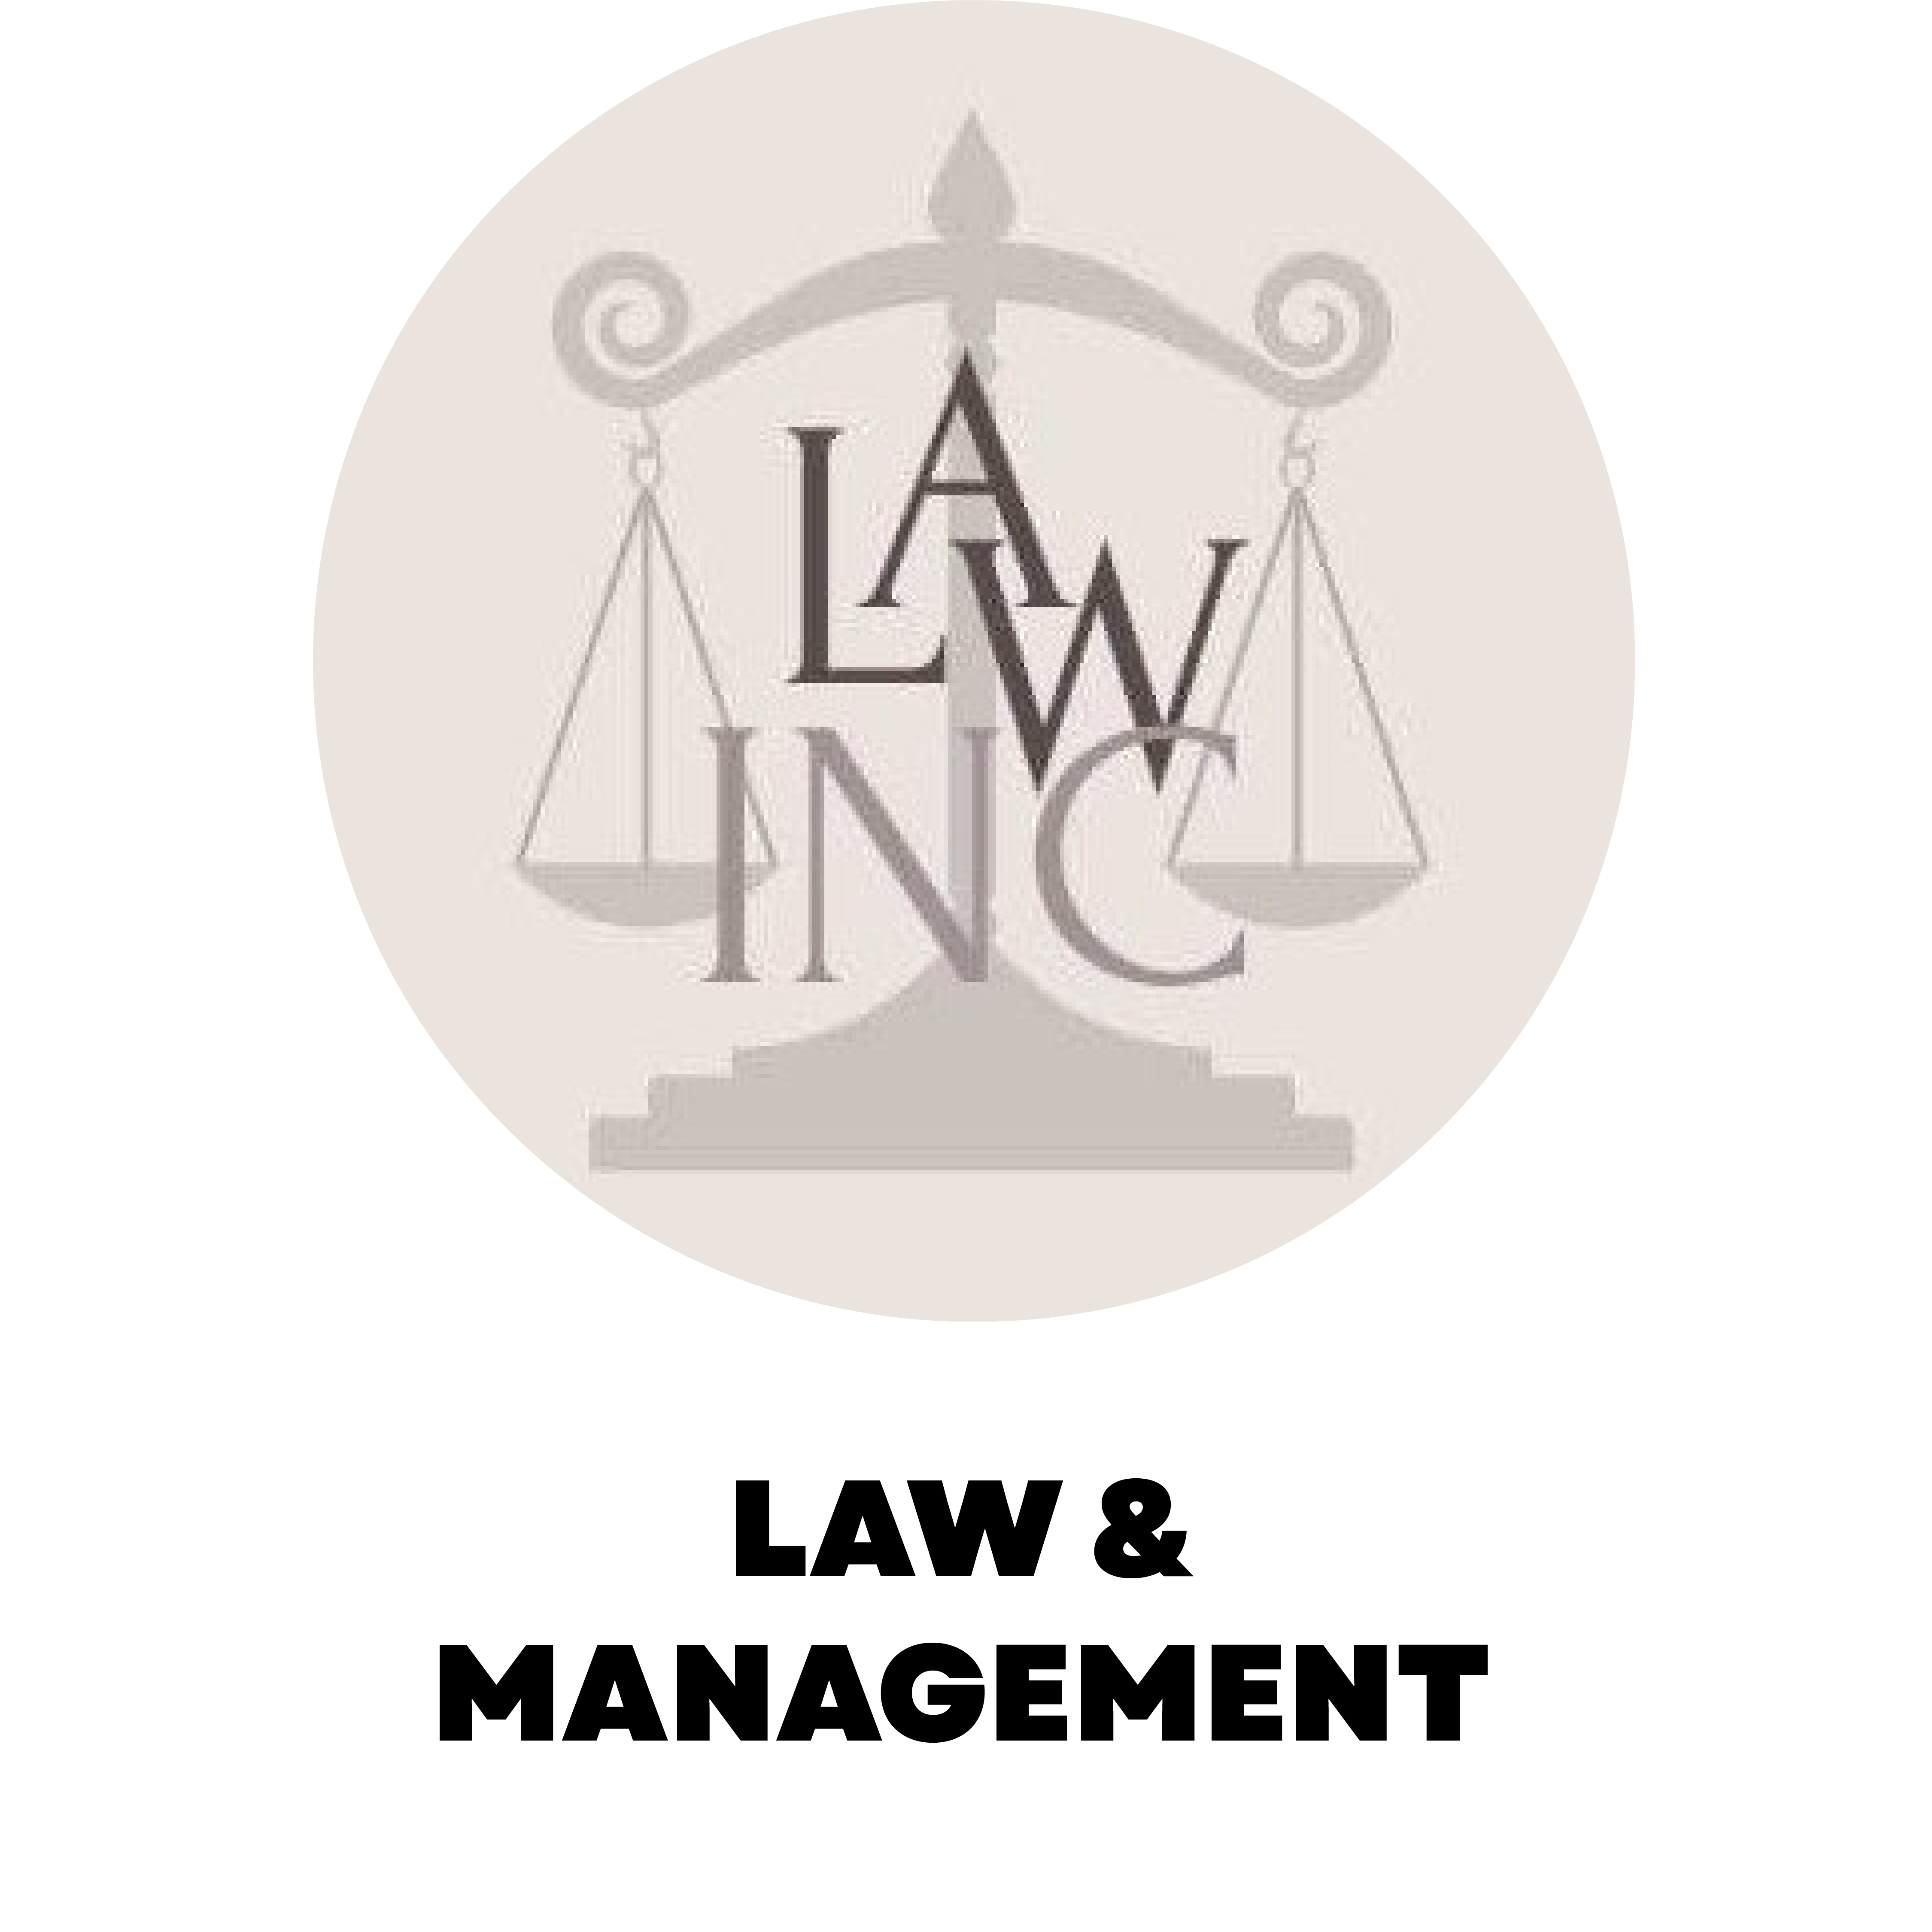 Law & Management Interest Group